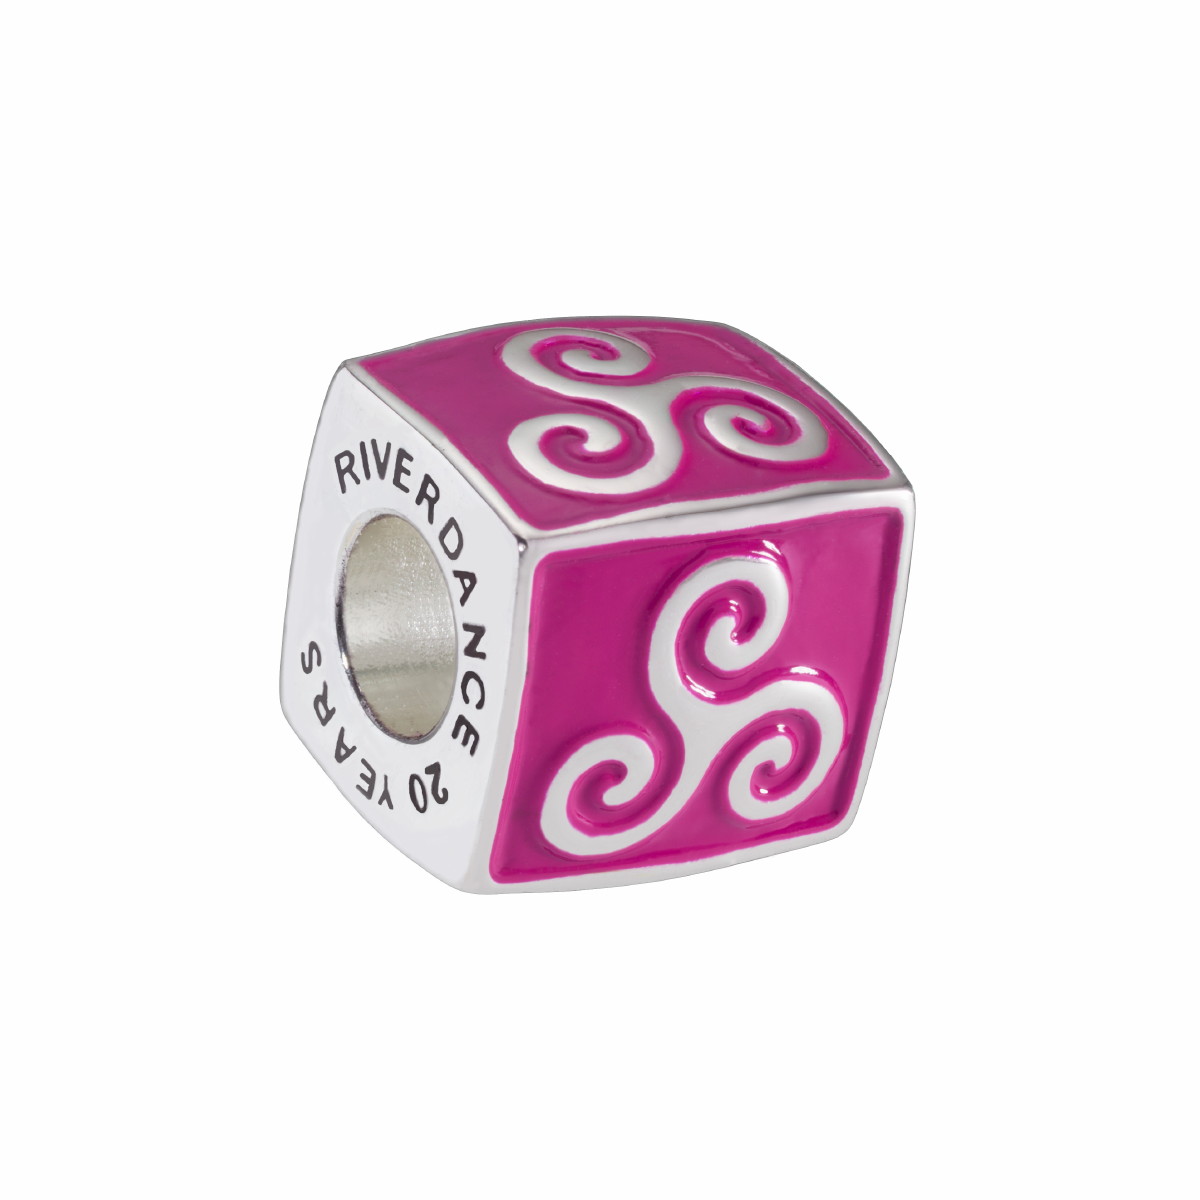 Riverdance20 Tri Spiral Cube Charm Bead - Purple Enamel